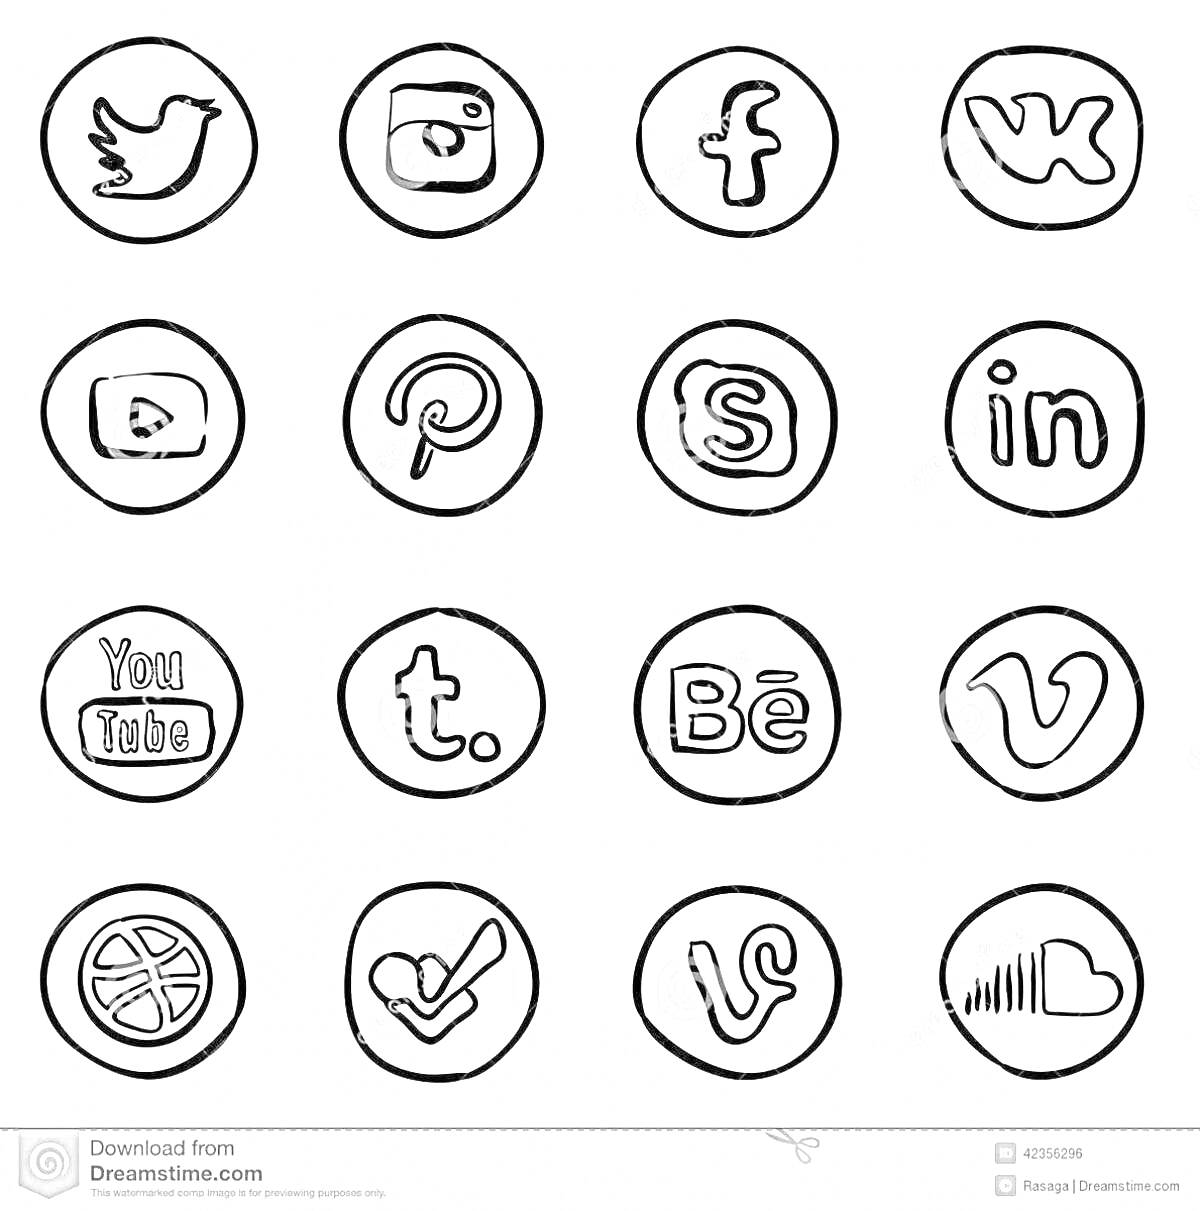 Раскраска Логотипы популярных социальных сетей и приложений в круглой рамке - Twitter, Instagram, Facebook, ВКонтакте, YouTube, Pinterest, Skype, LinkedIn, YouTube, Tumblr, Behance, Vimeo, Dribbble, Foursquare, Vine, SoundCloud